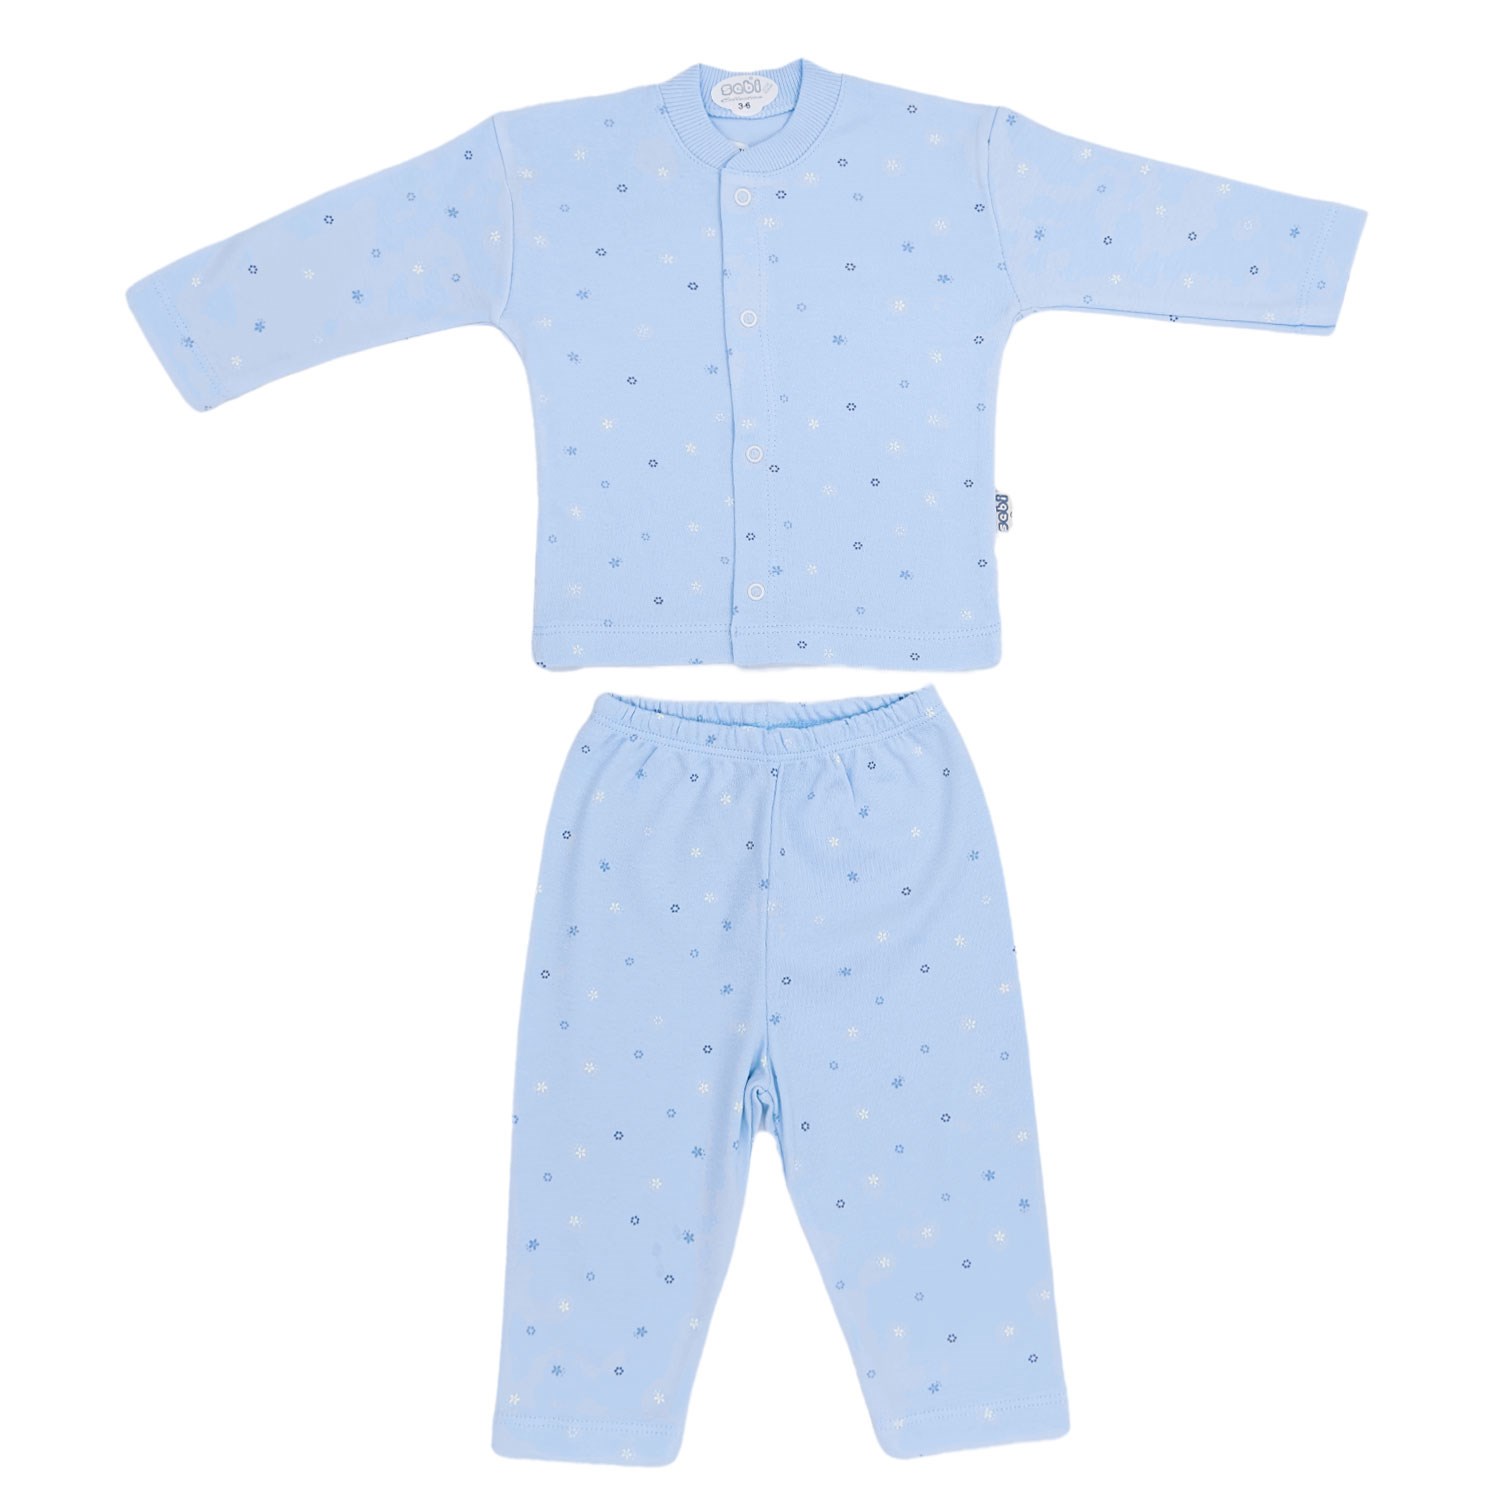 Sebi Bebe Ay Yıldız Baskılı Bebek Pijama Takımı 2331 Mavi